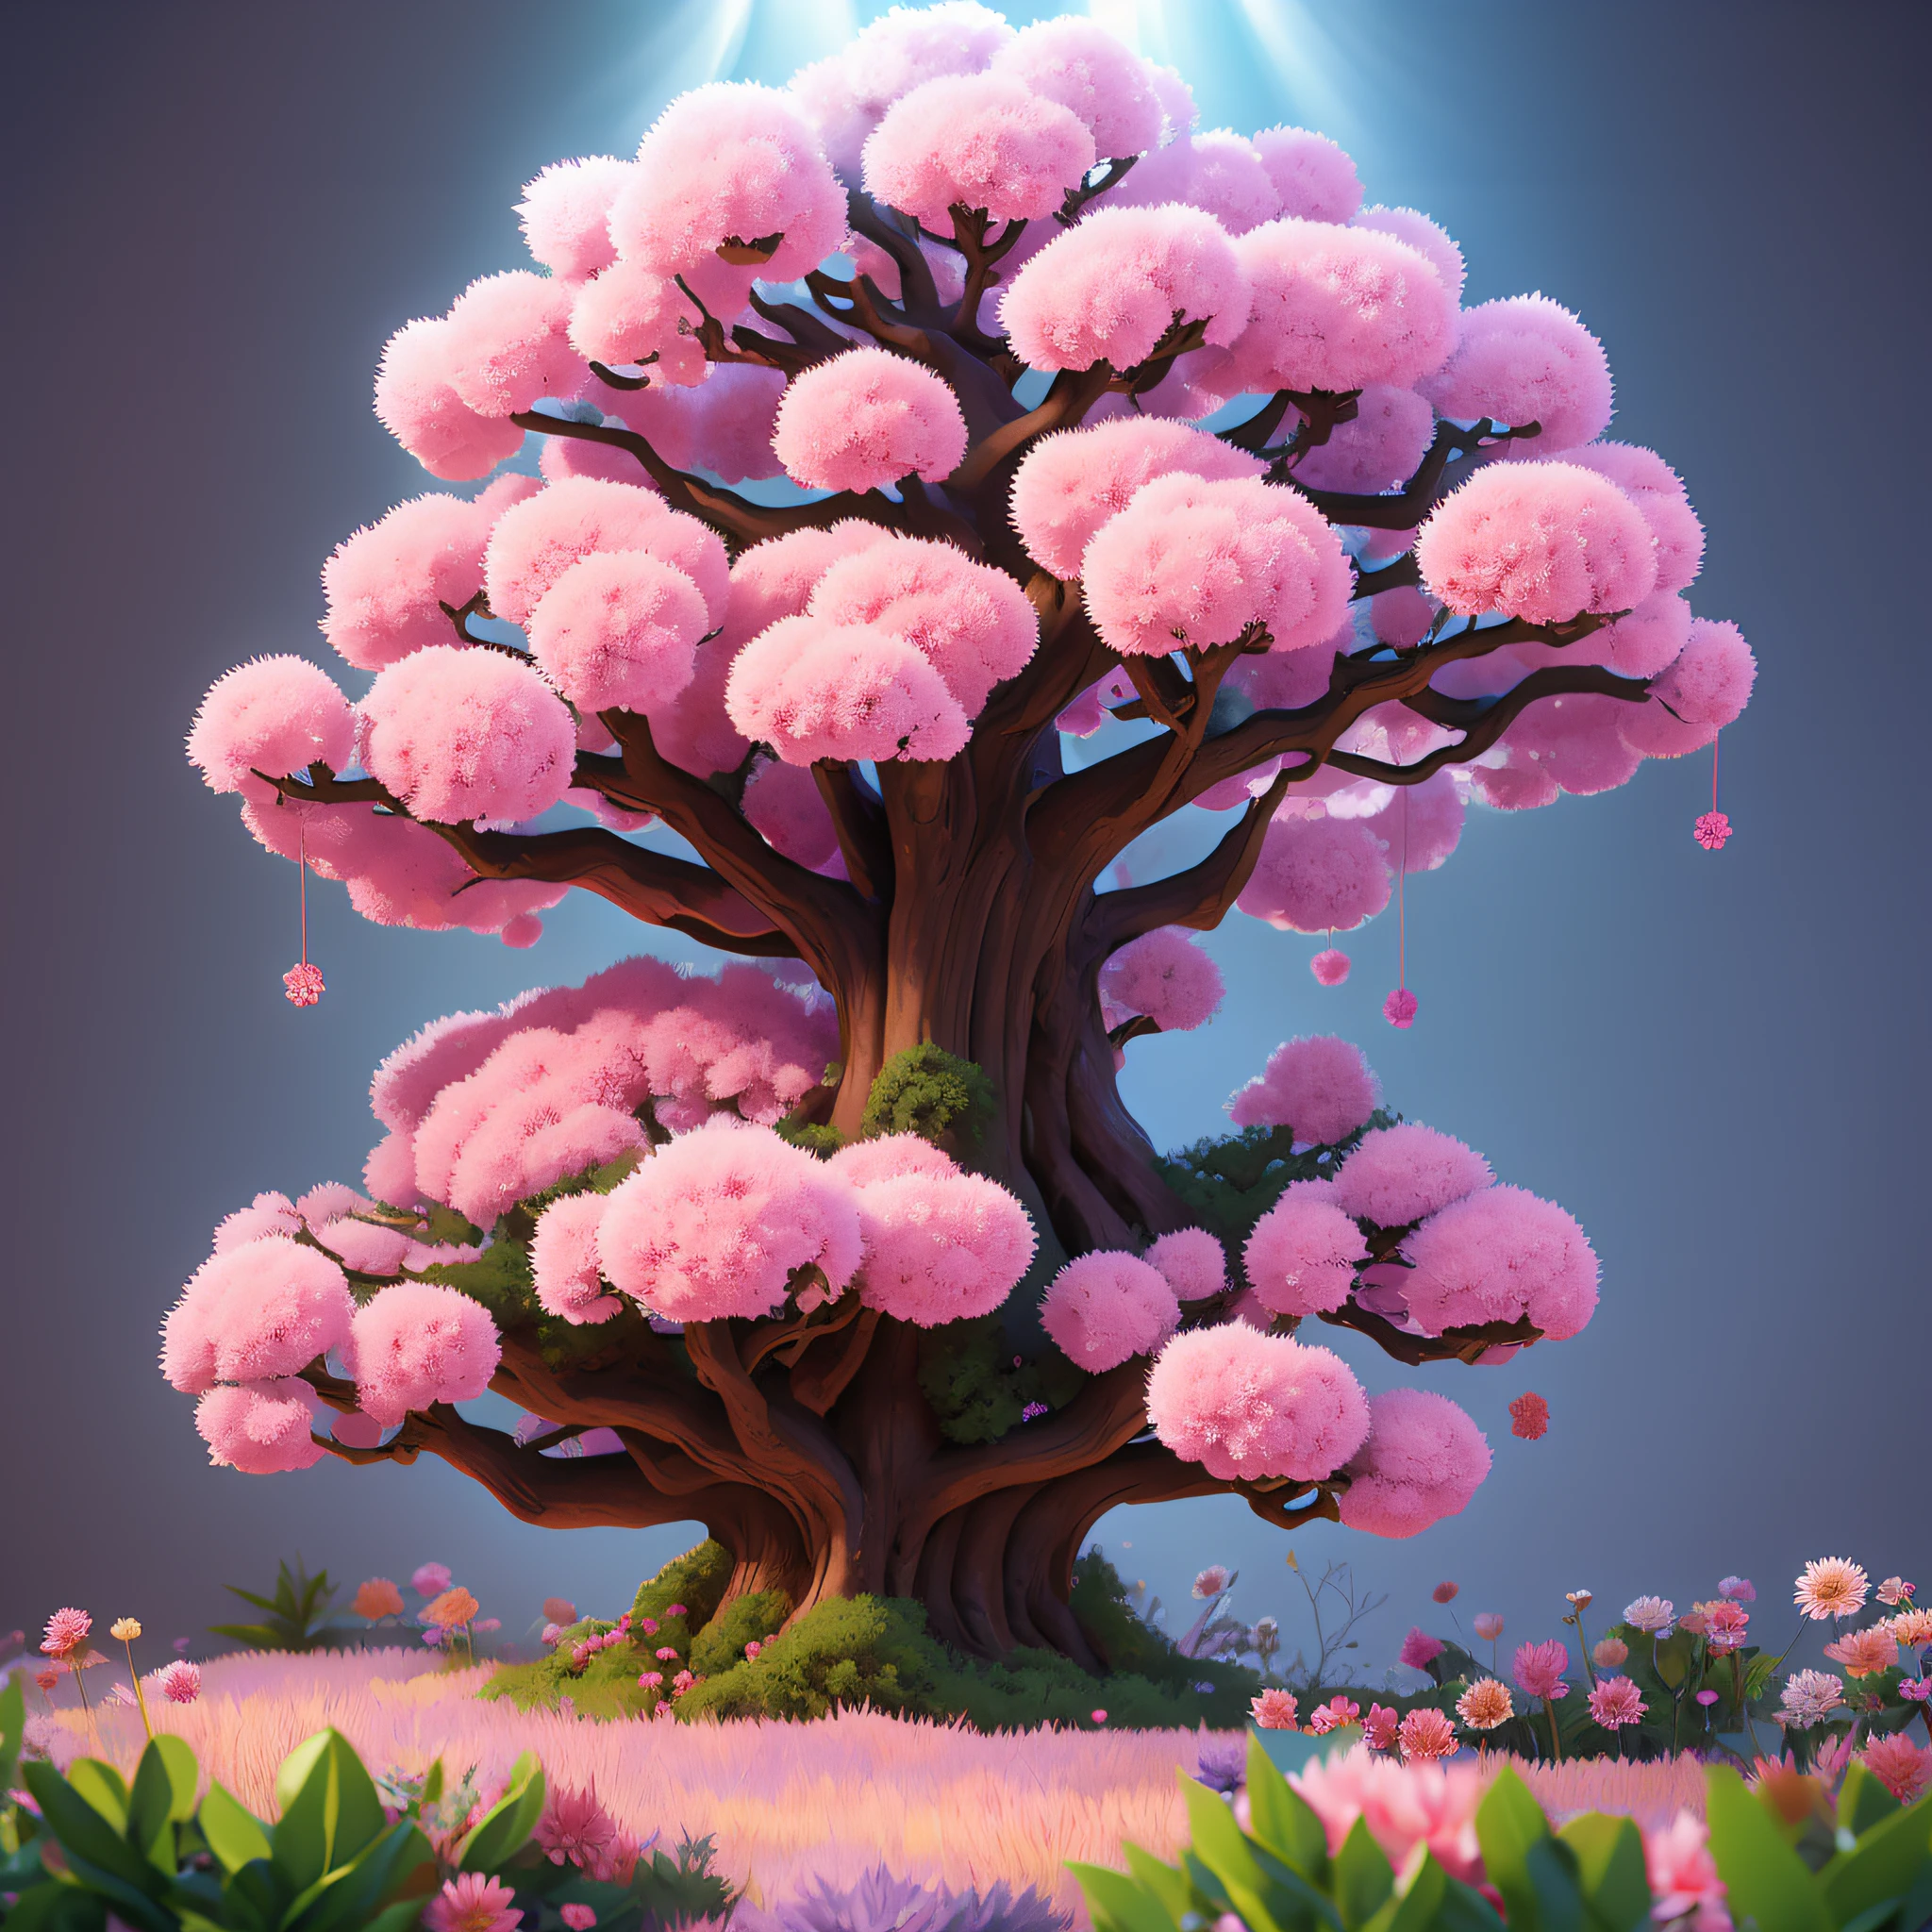 큰 나무어렴풋한 분홍색과 보라색 꽃이 핀 가슴이 아름답다